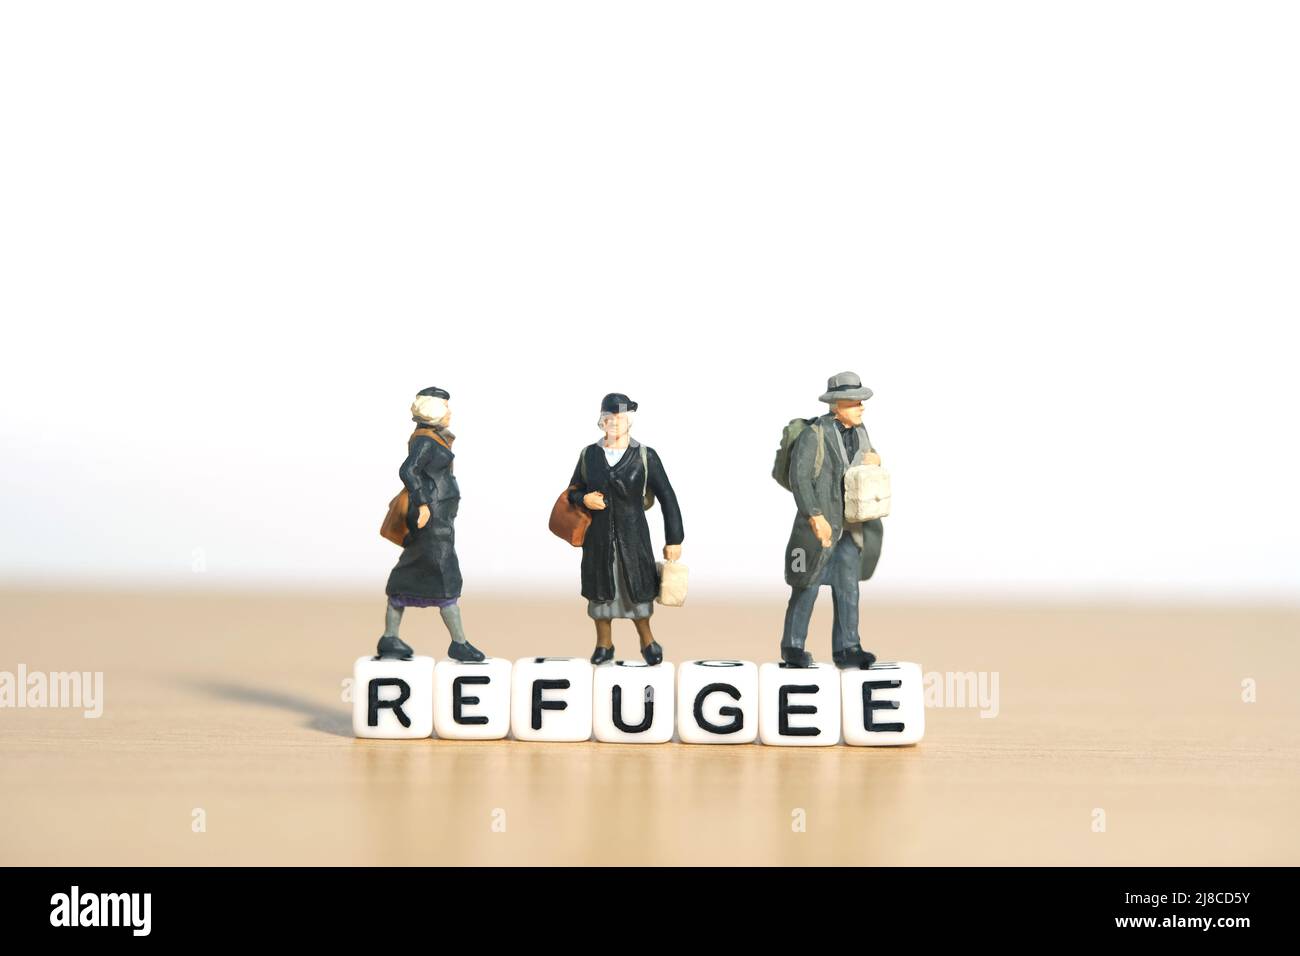 Miniatur Menschen Spielzeug Figur Fotografie. Eine Gruppe von Personen, die über dem Wortwürfel des Flüchtlings stehen. Bildfoto Stockfoto